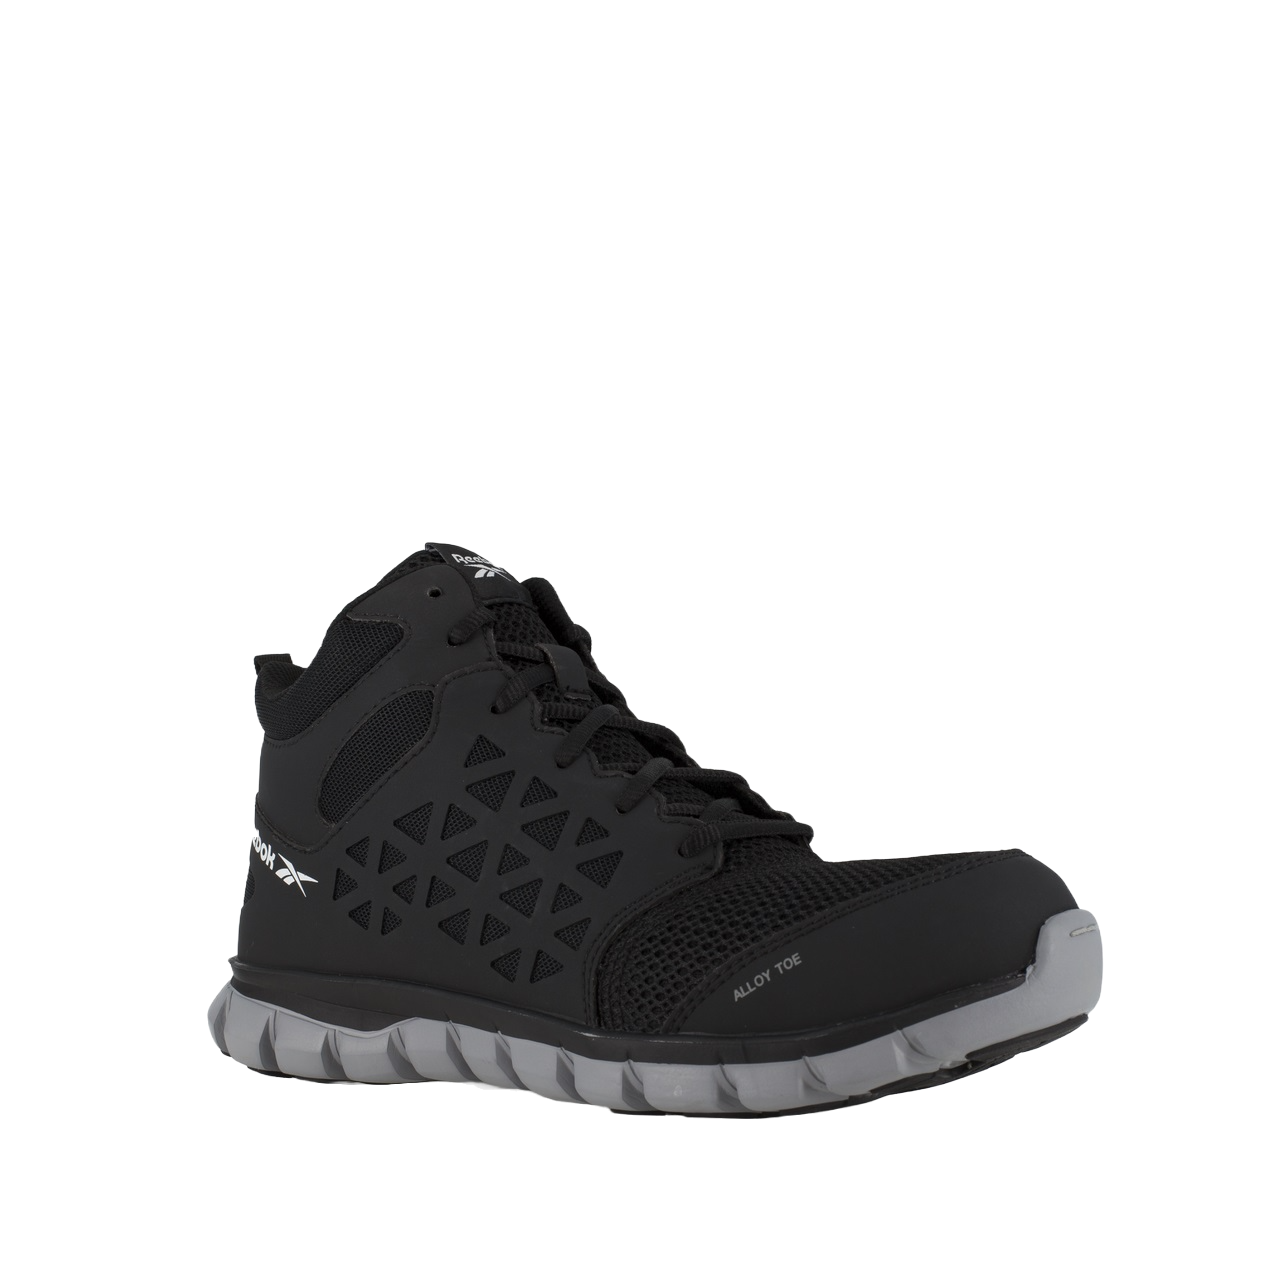 Reebok Men's Sublite Mid-Cut Alloy Toe Black Athletic Shoes RB4141